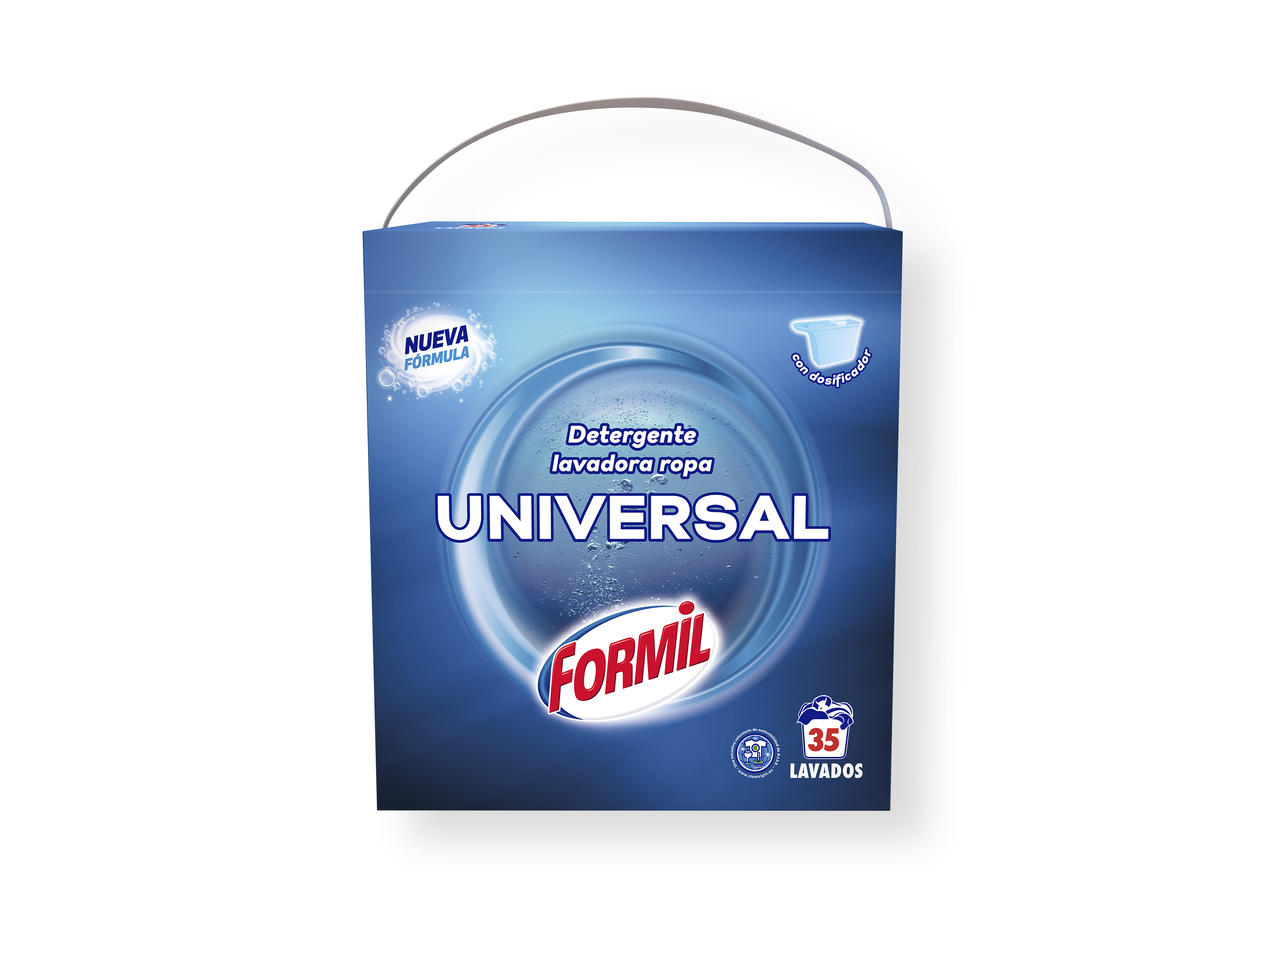 'Formil(R)' Detergente universal en polvo